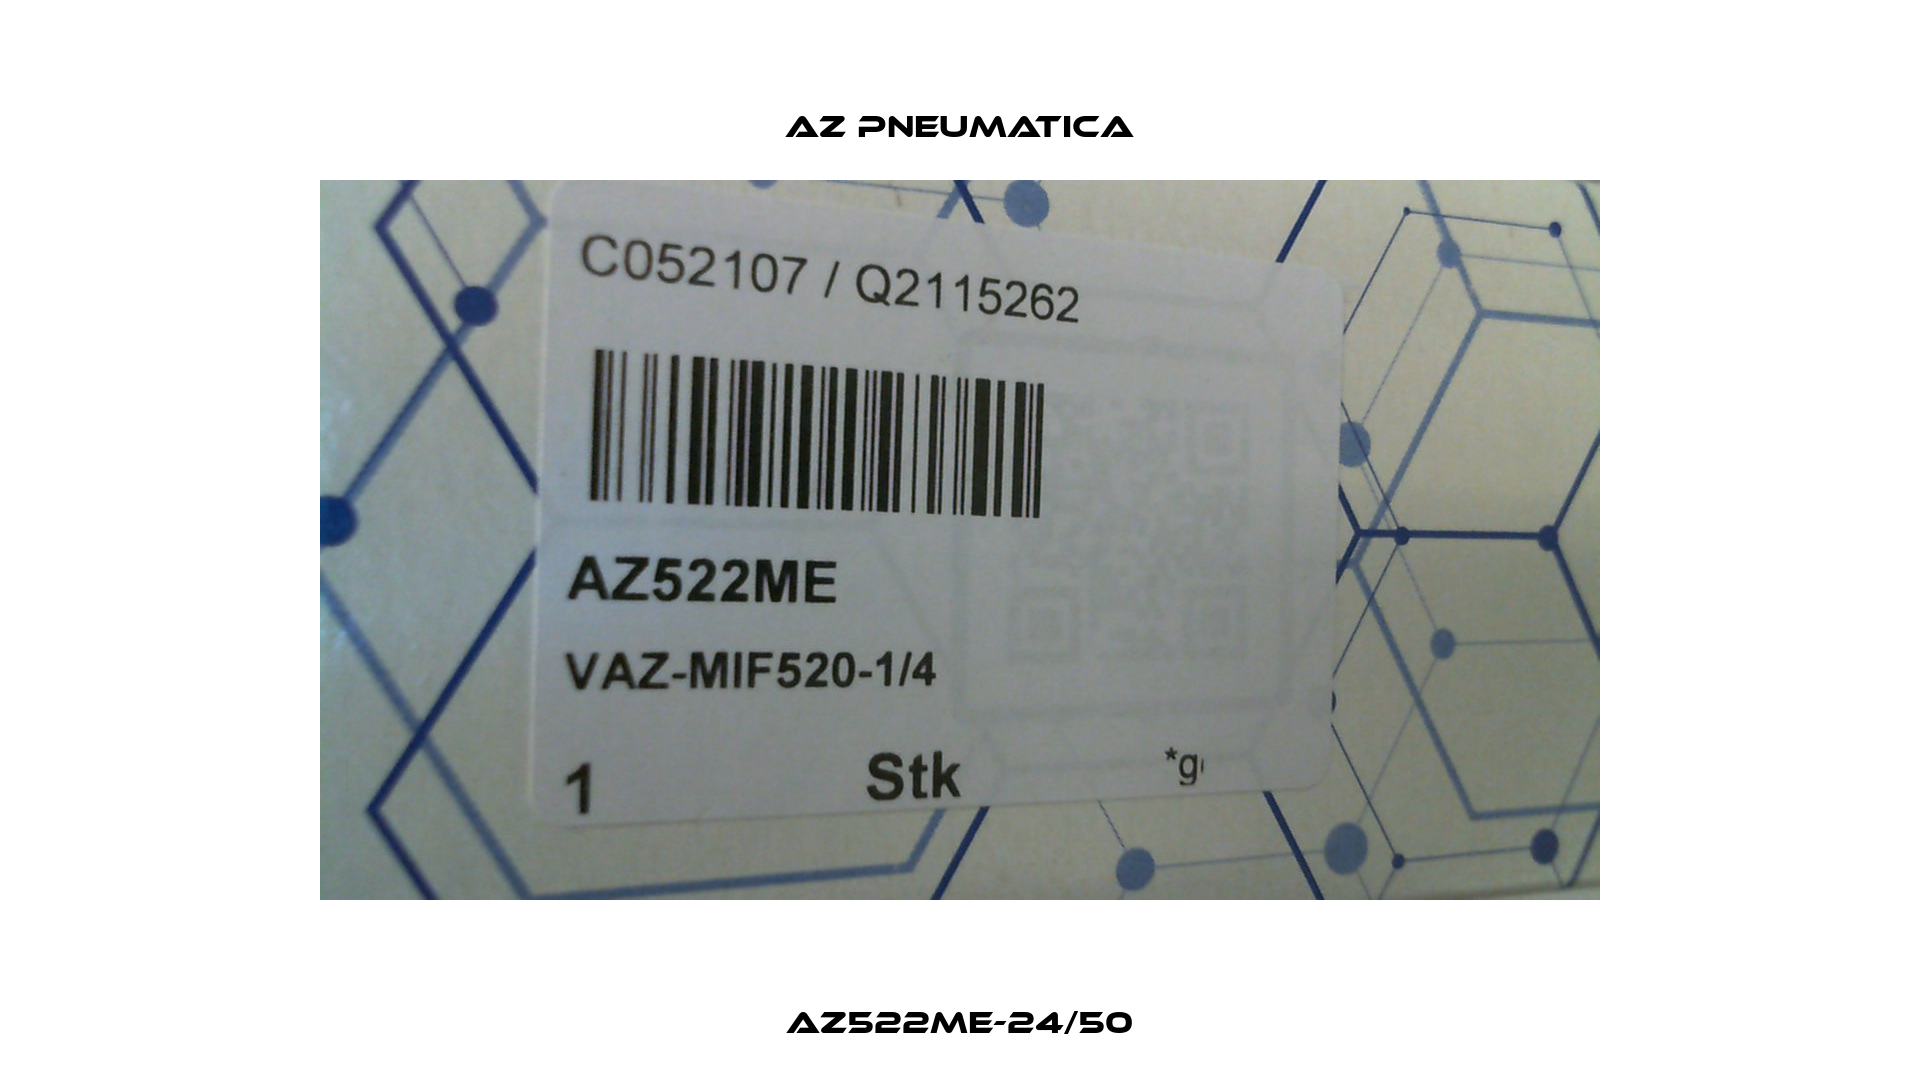 AZ522ME-24/50 AZ Pneumatica